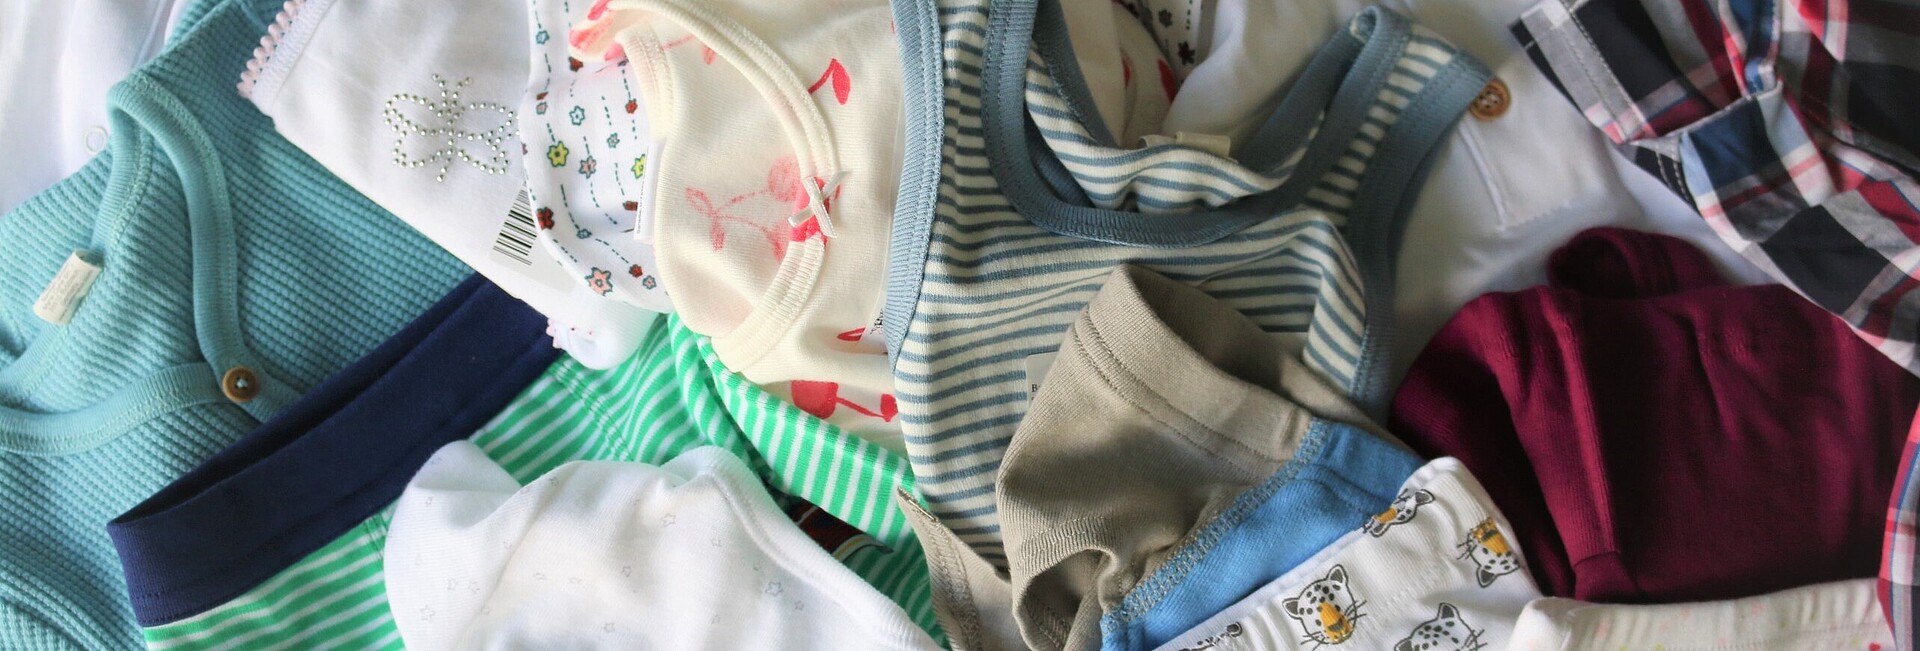 Abb.1: exemplarische Abbildung der geprüften Kinder- und Baby-Unterwäsche aus reiner Baumwolle 